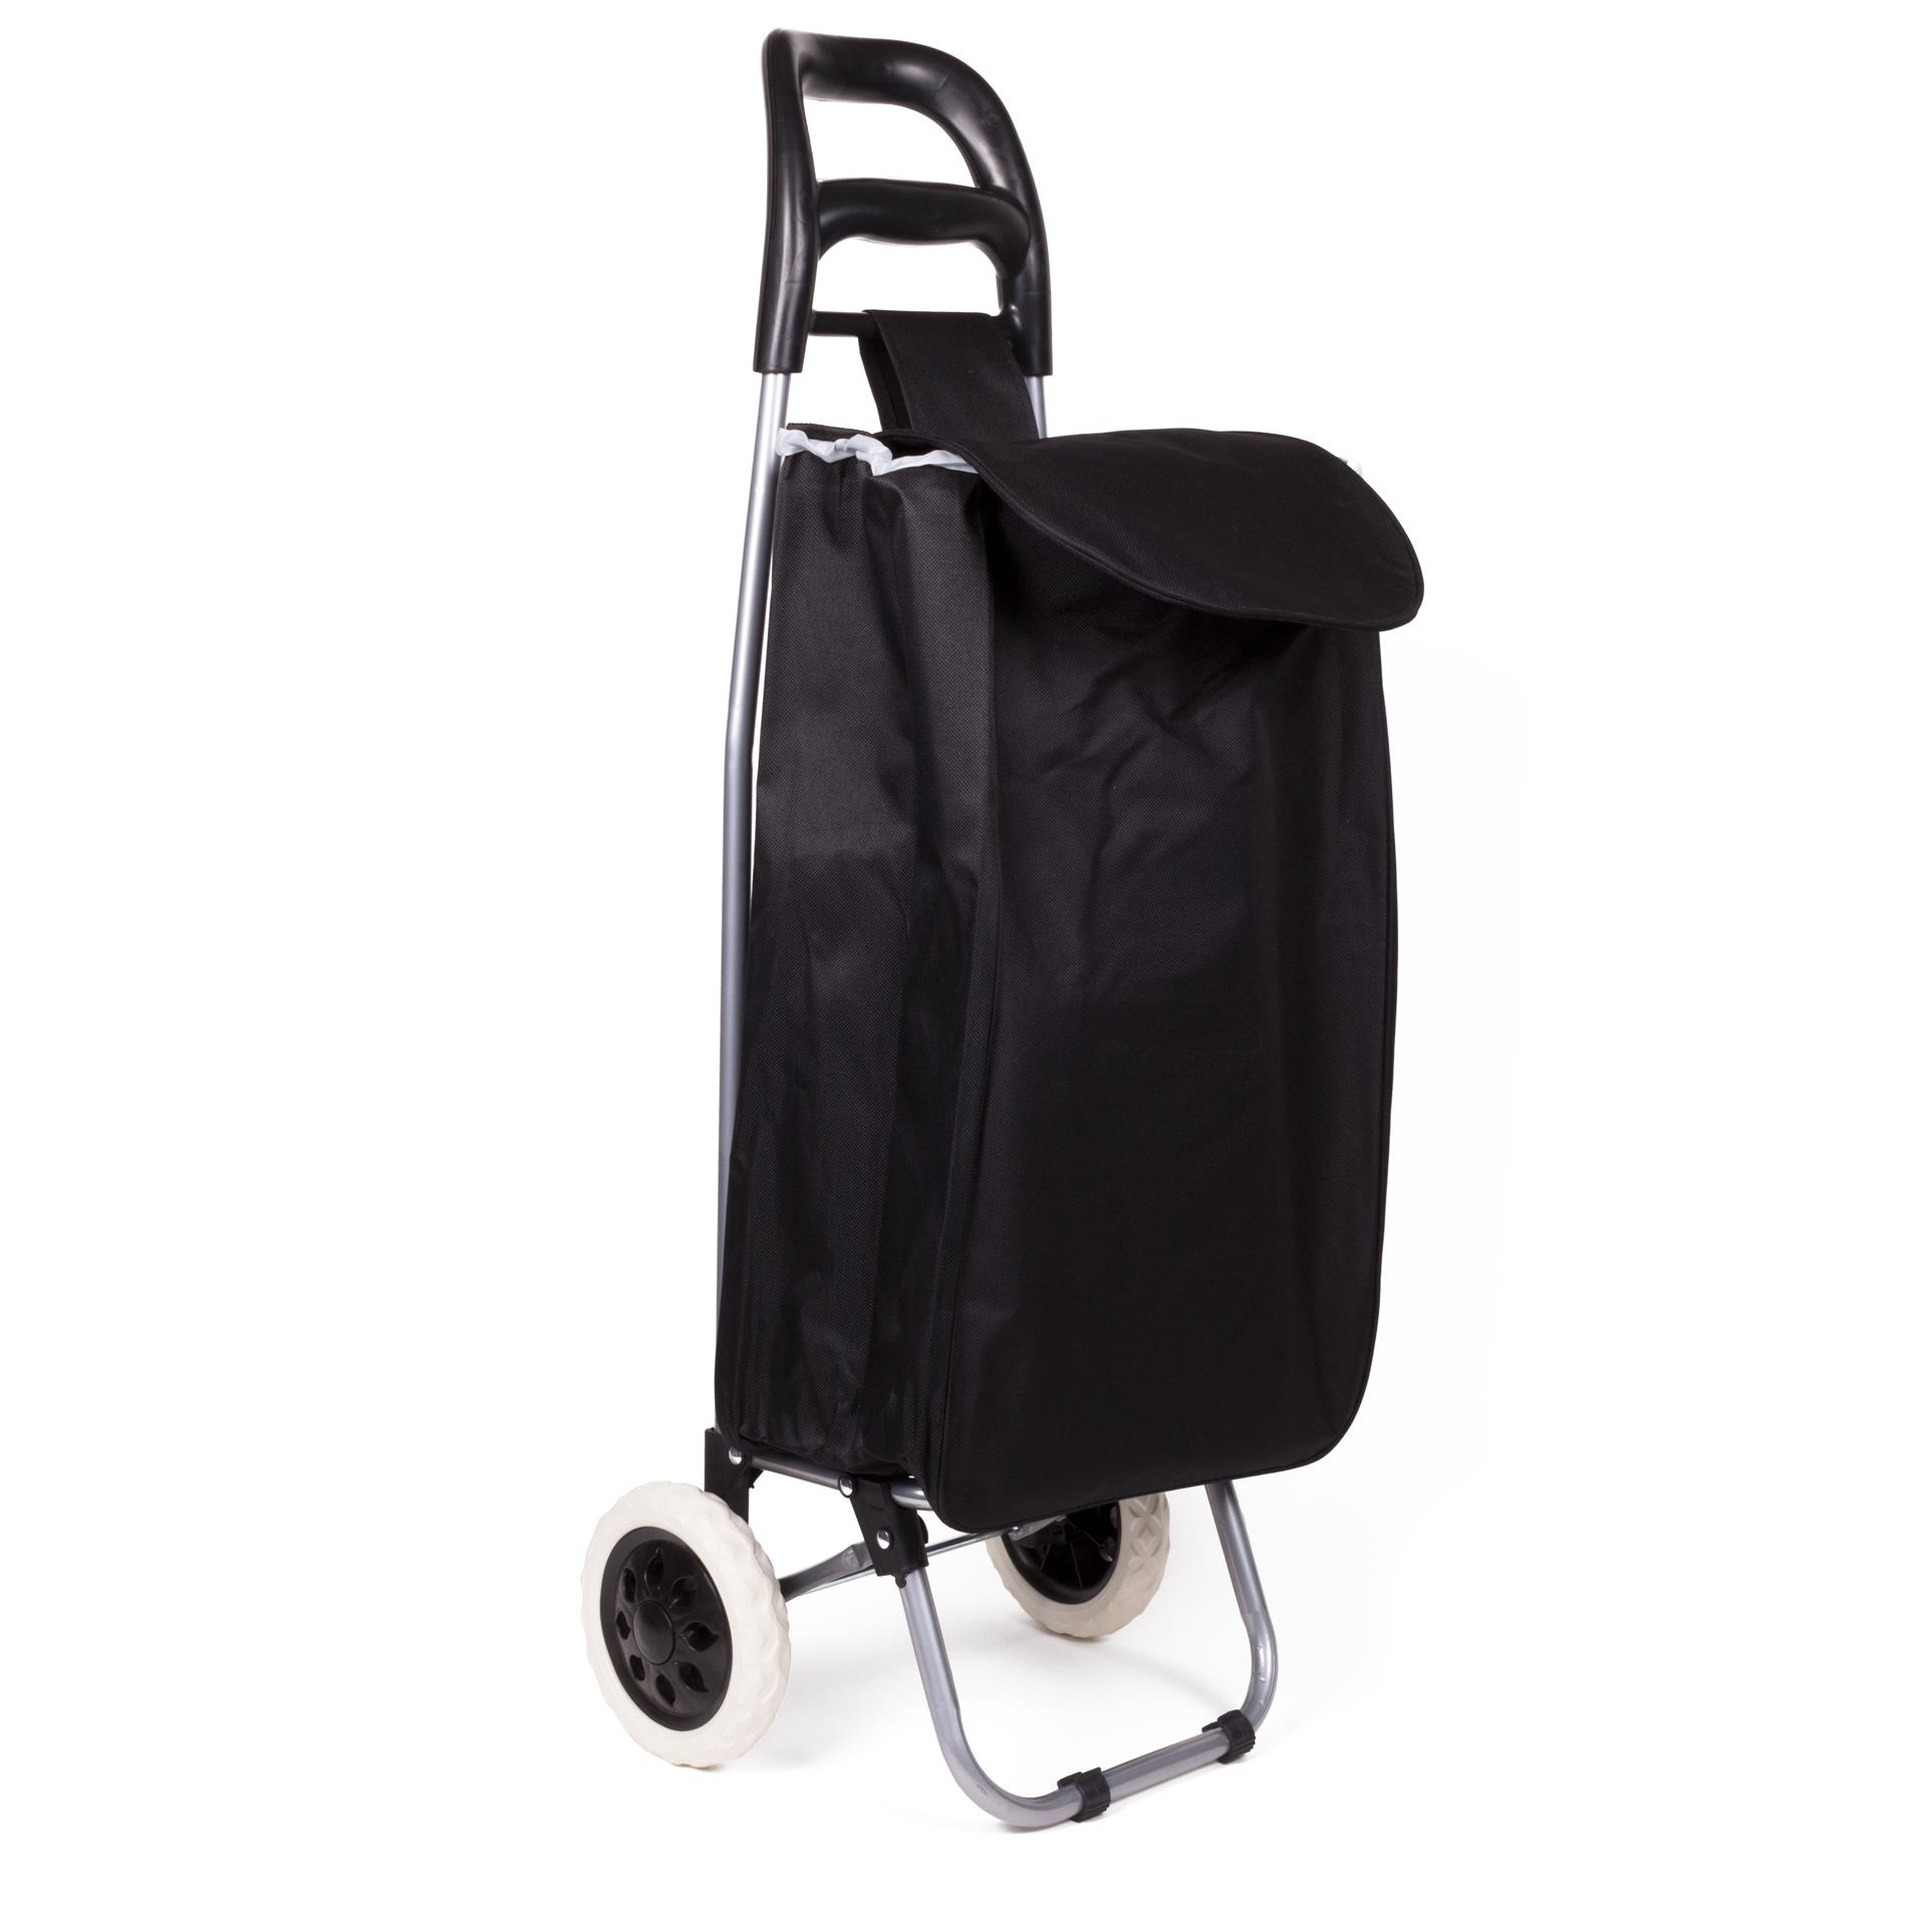 Benson Boodschappen trolley tas inhoud 40 liter zwart met wielen Boodschappentas -A 32 x 21 x 92 cm 